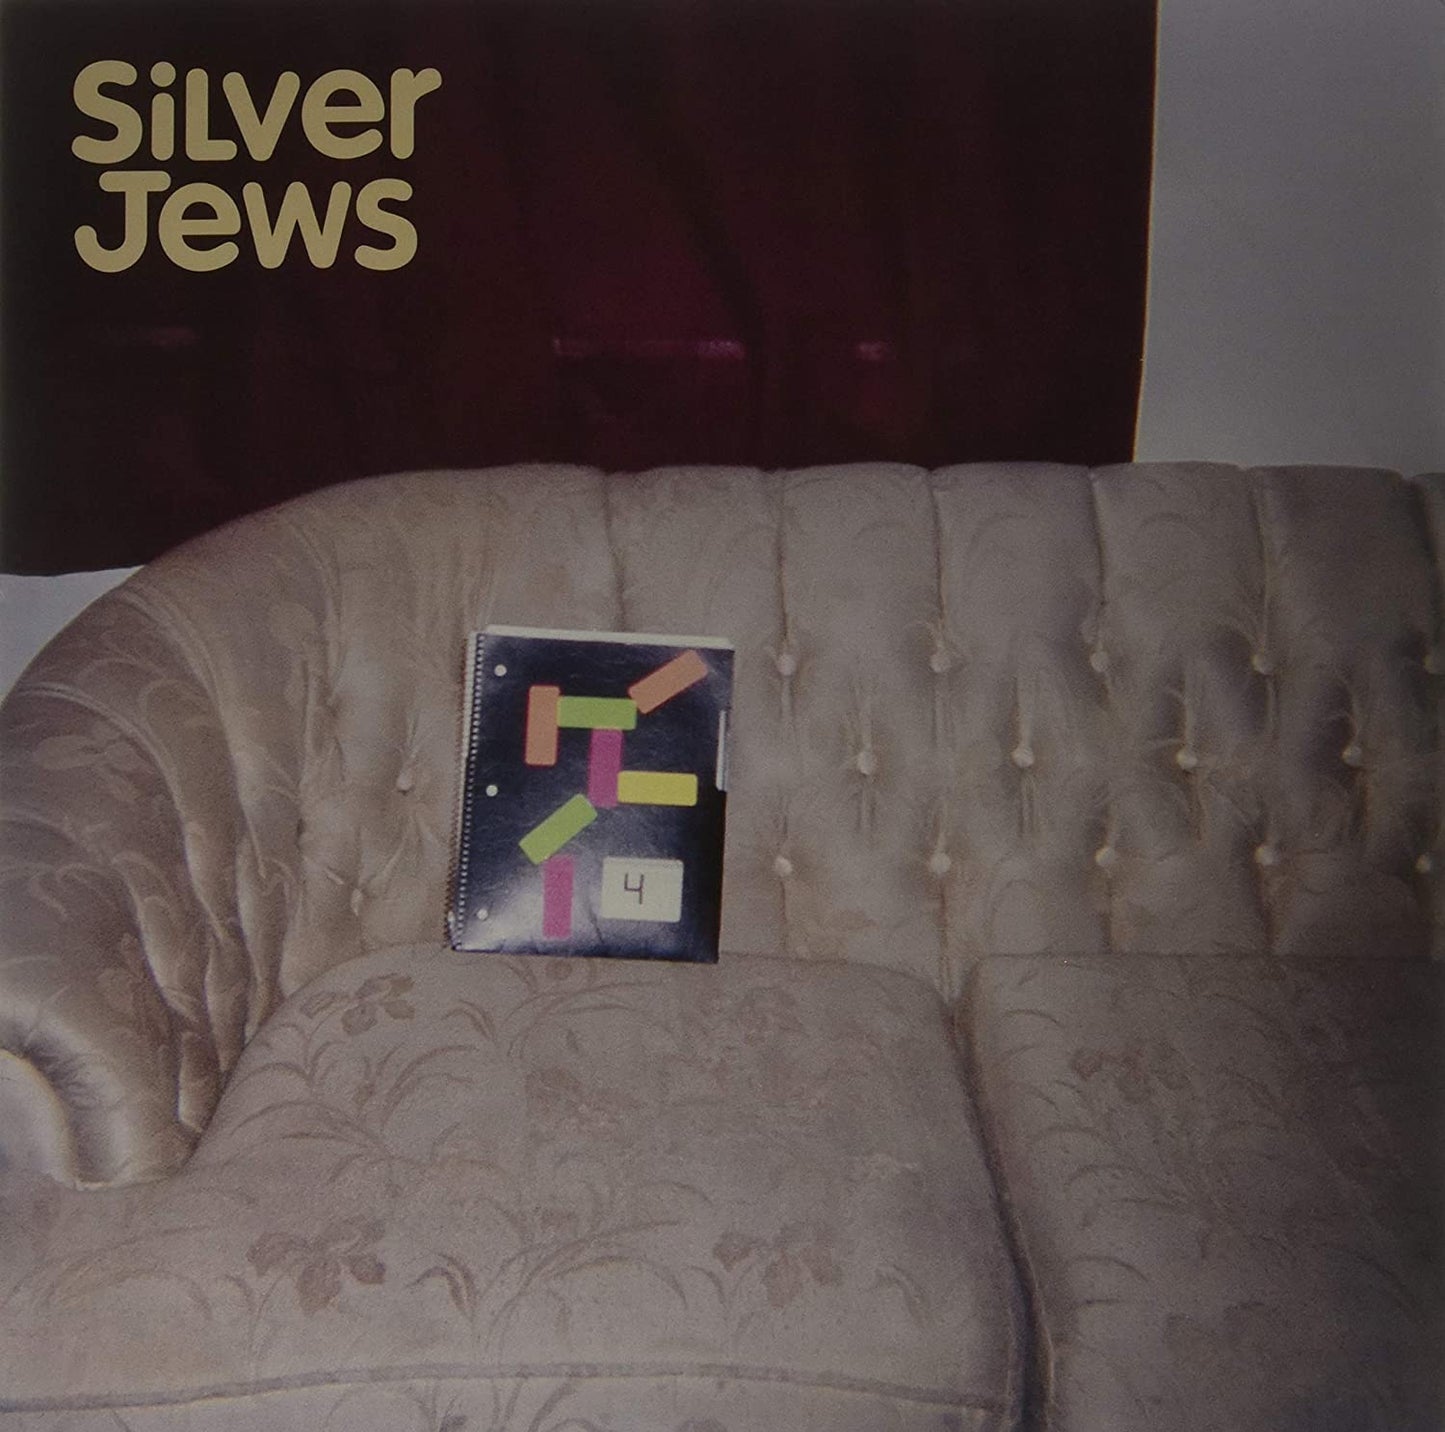 Silver Jews/Bright Flight [LP]